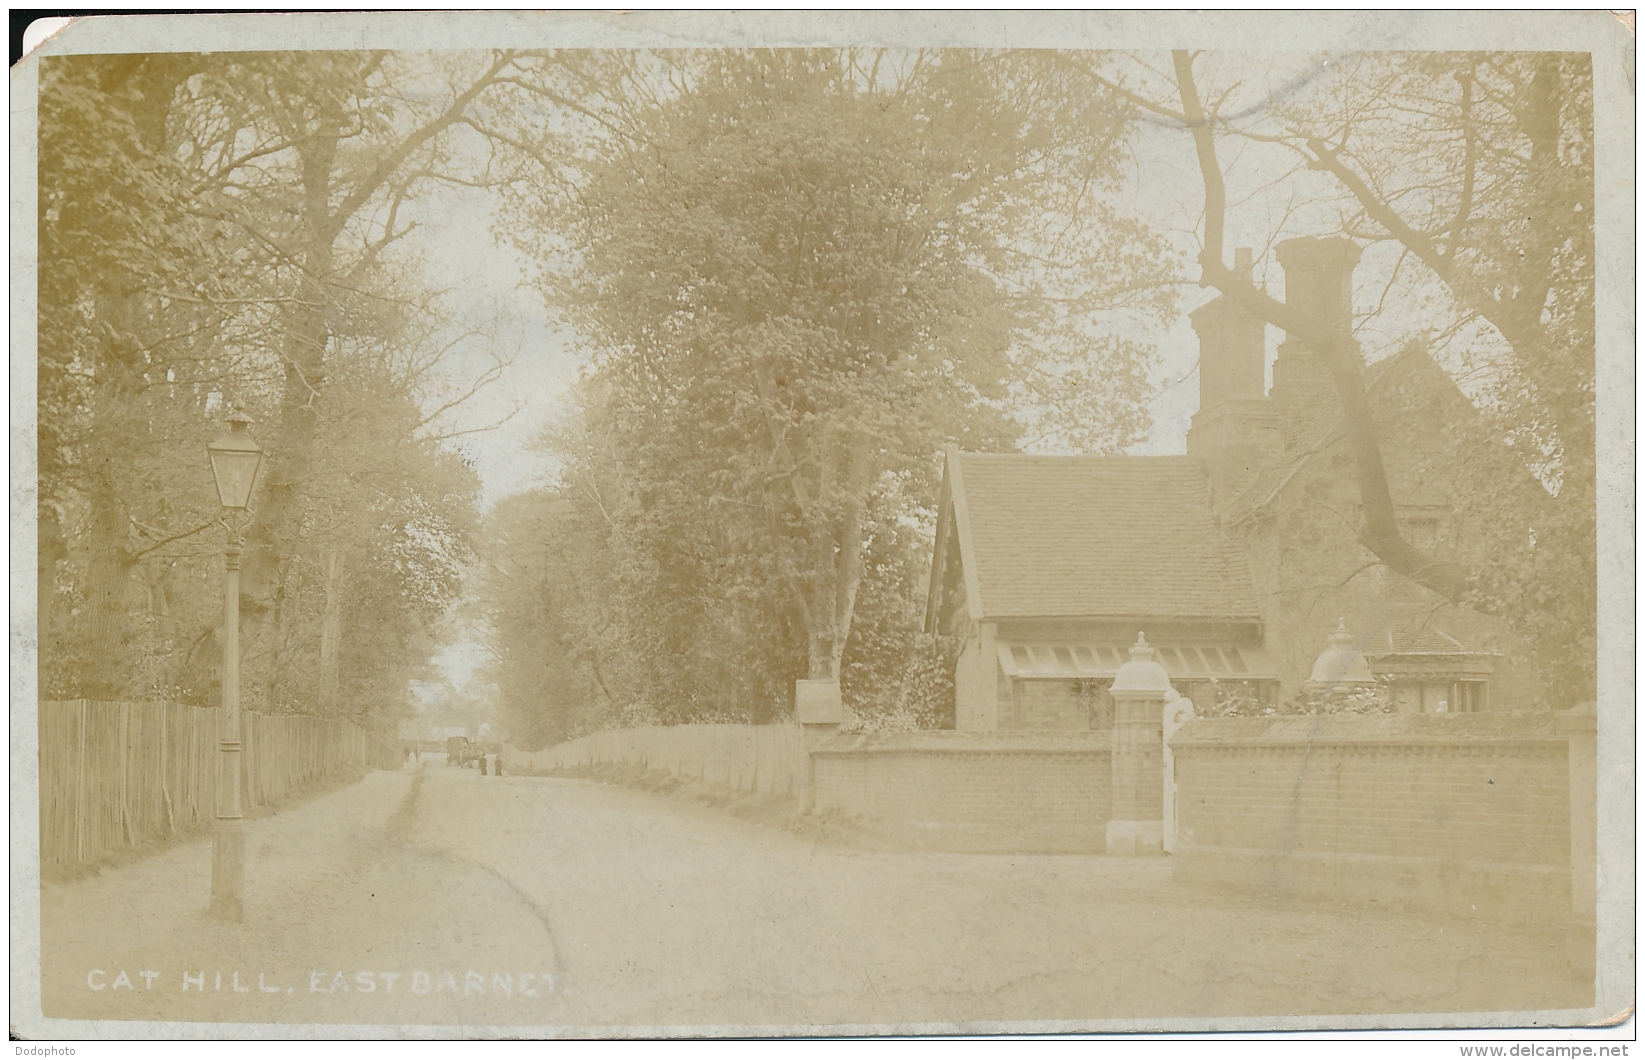 PC77224 Cat Hill. East Barnet. H. Cooper. 1909 - World